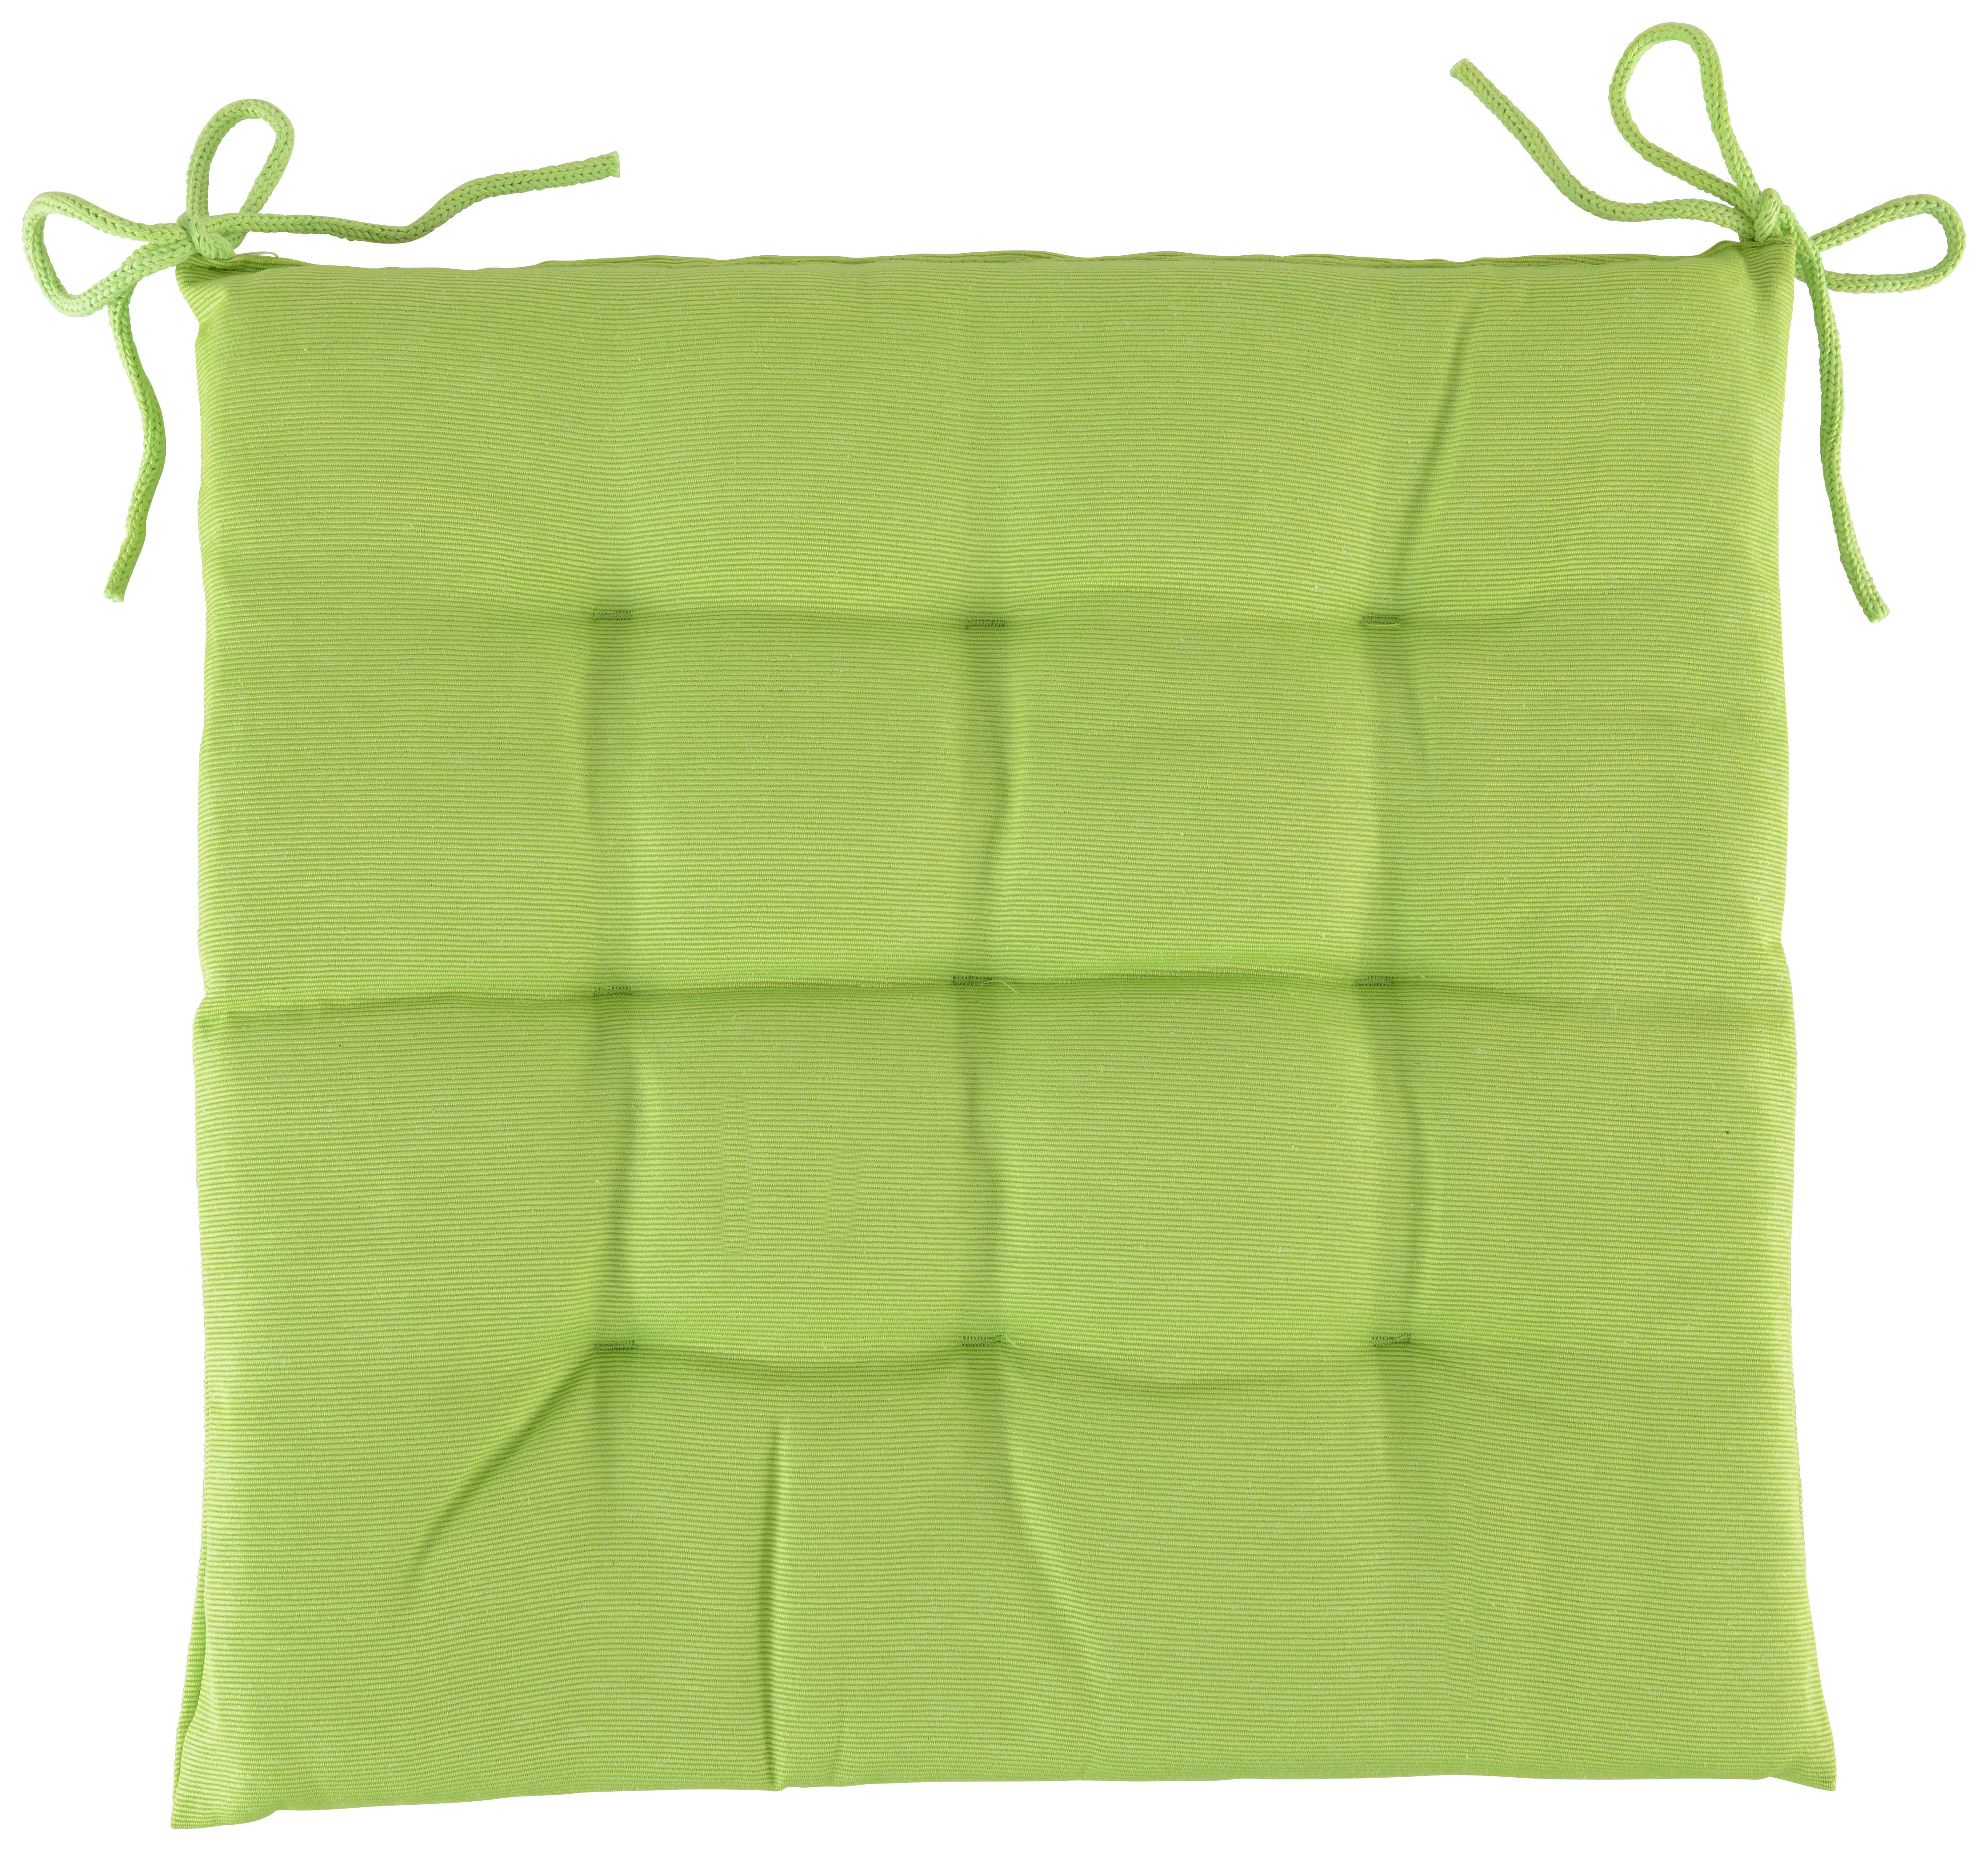 SEDACÍ VANKÚŠ, 40/40/4 cm - zelená, Basics, textil (40/40/4cm) - Boxxx